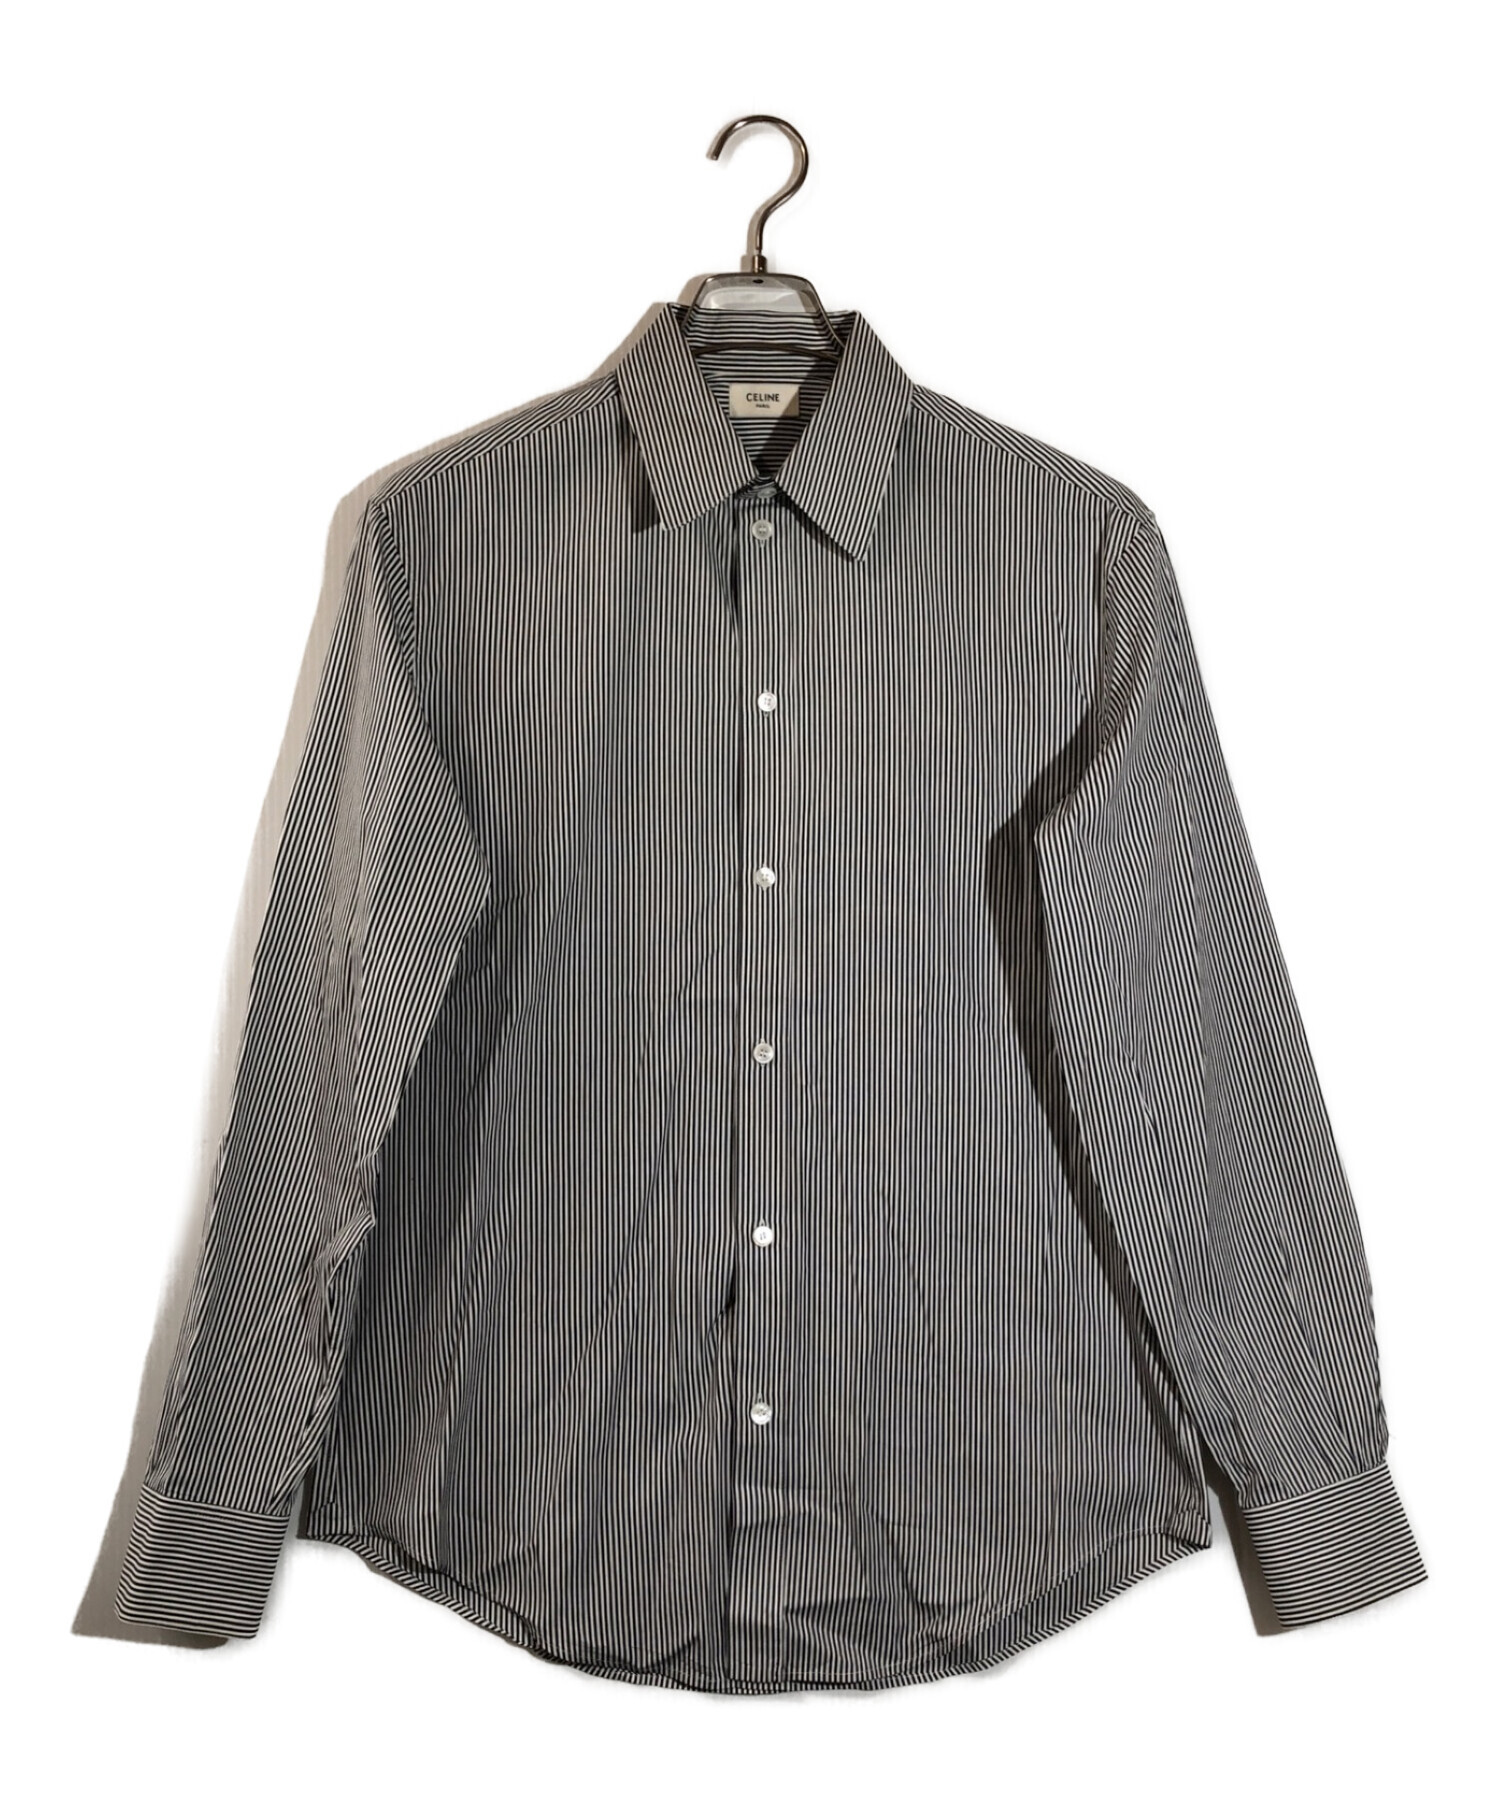 極美品 セリーヌ CELINE シャツ オーバーサイズシャツ ロングスリーブ フィーラインプリント 総柄 トップス メンズ 38(M相当) ブラック